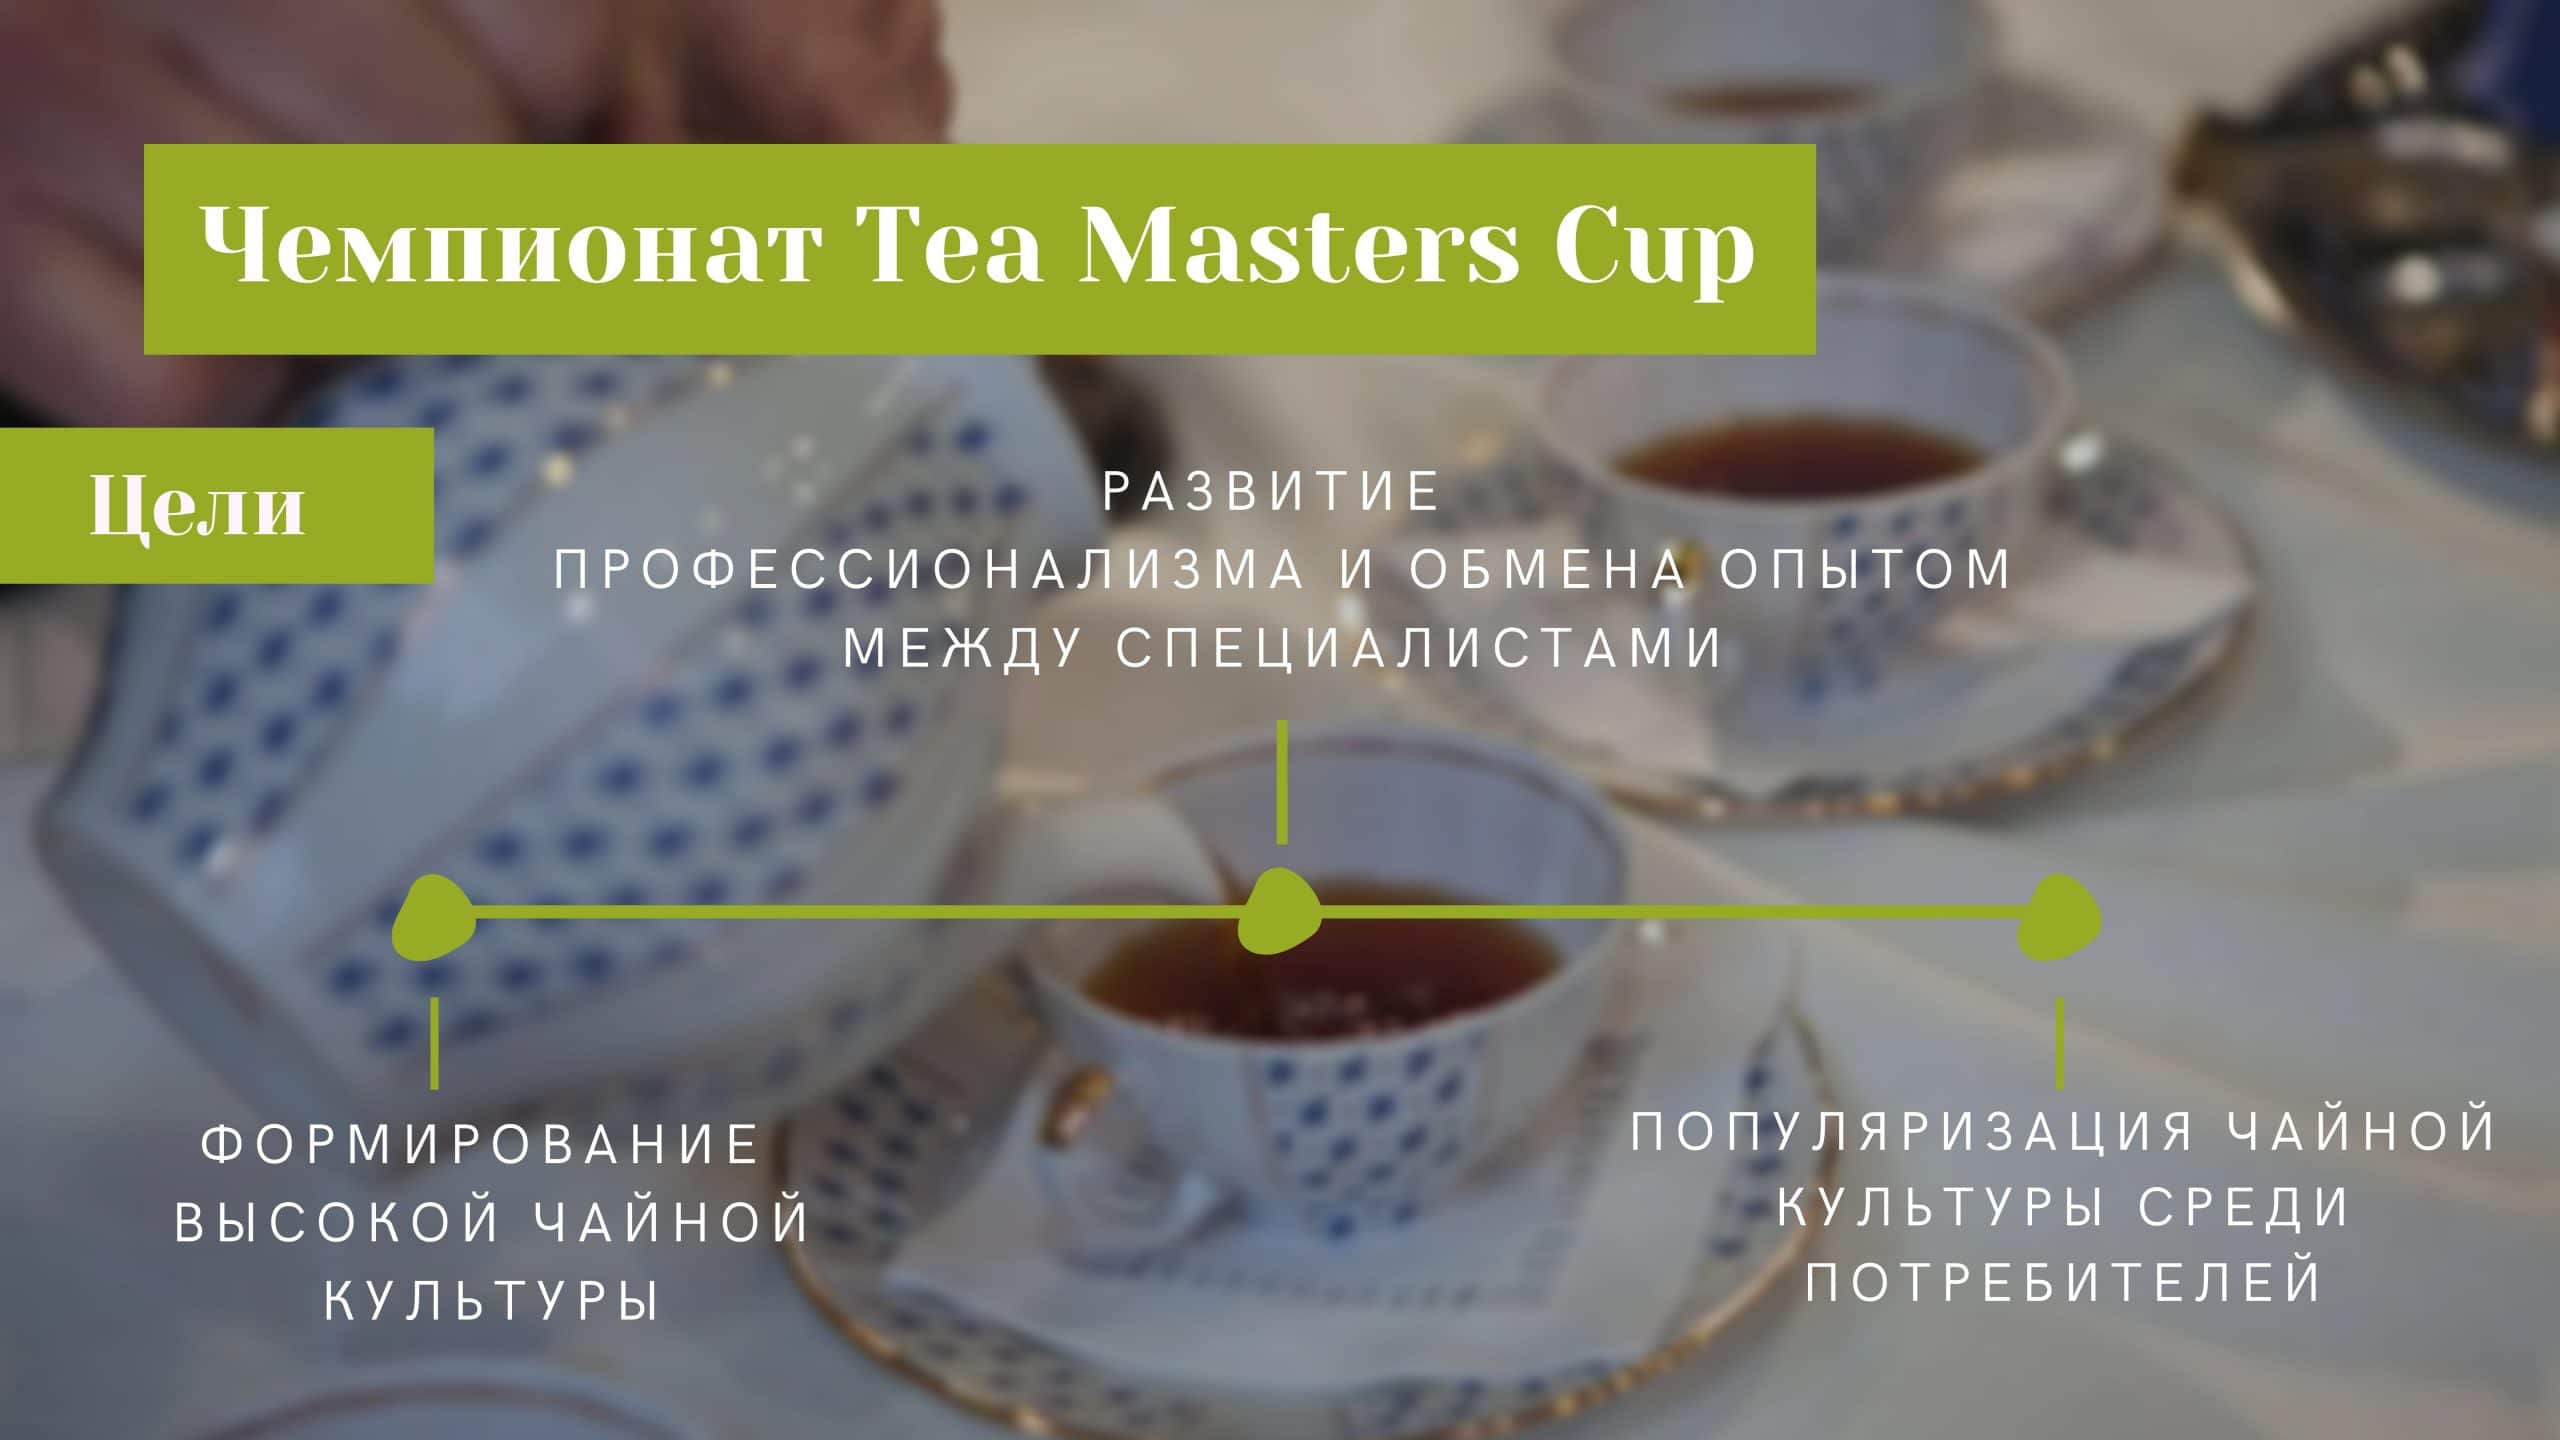 Тea Masters Cup презентация